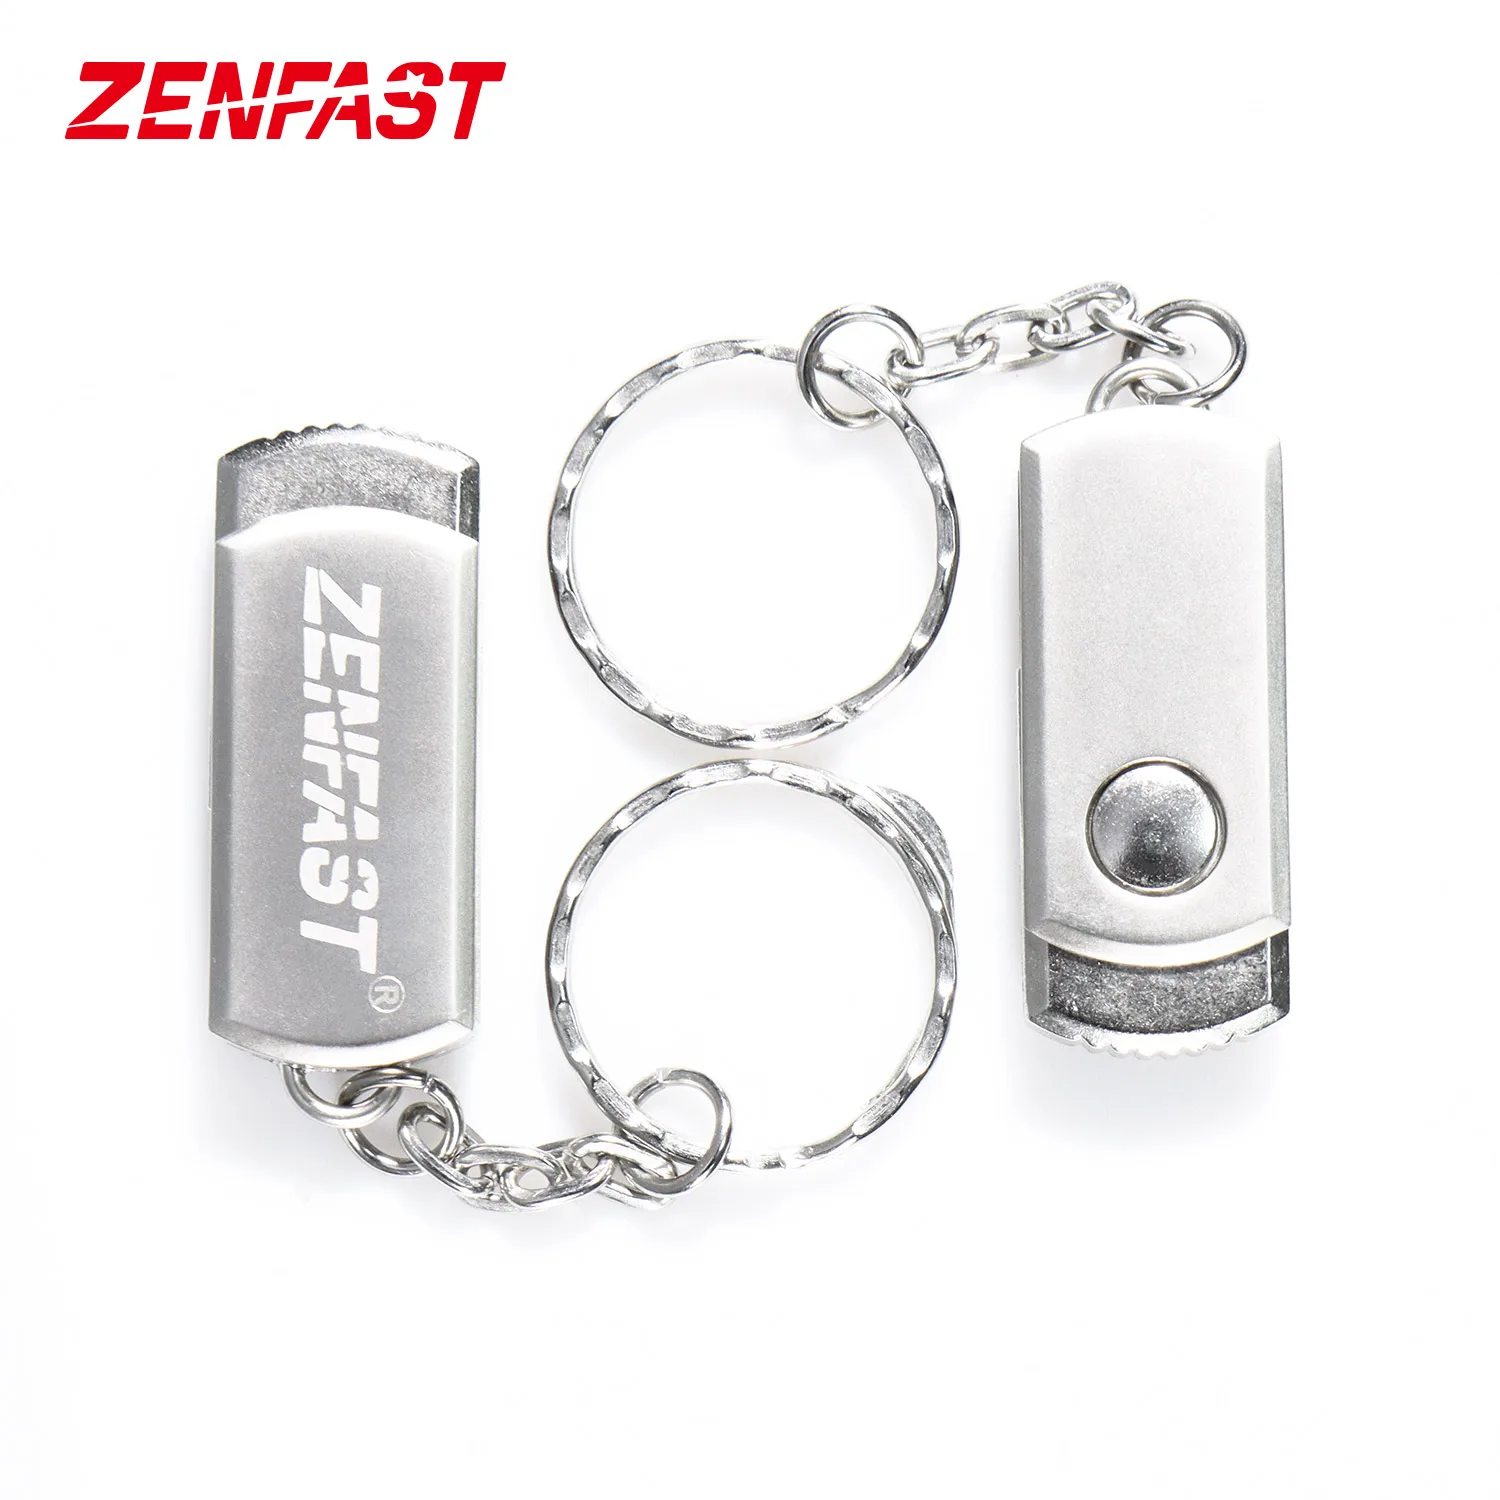 

ZENFAST Custom 4GB 8GB 16GB 32GB 64GB USB Flash Drive Metal Stainless Steel USB 2.0 Pen Drive OEM ODM Dropshipping Usb Stick, Silver